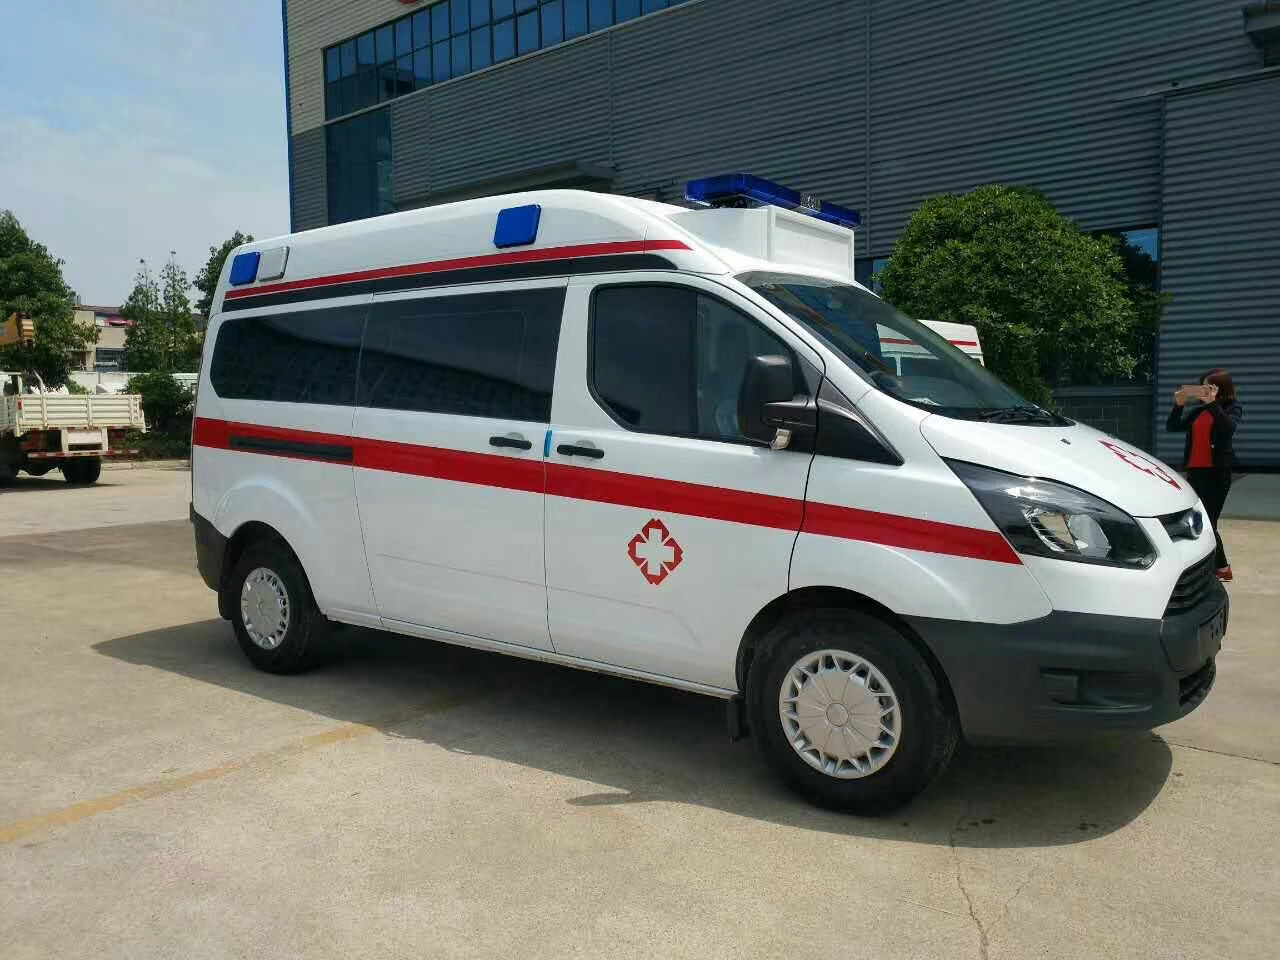 连江县出院转院救护车